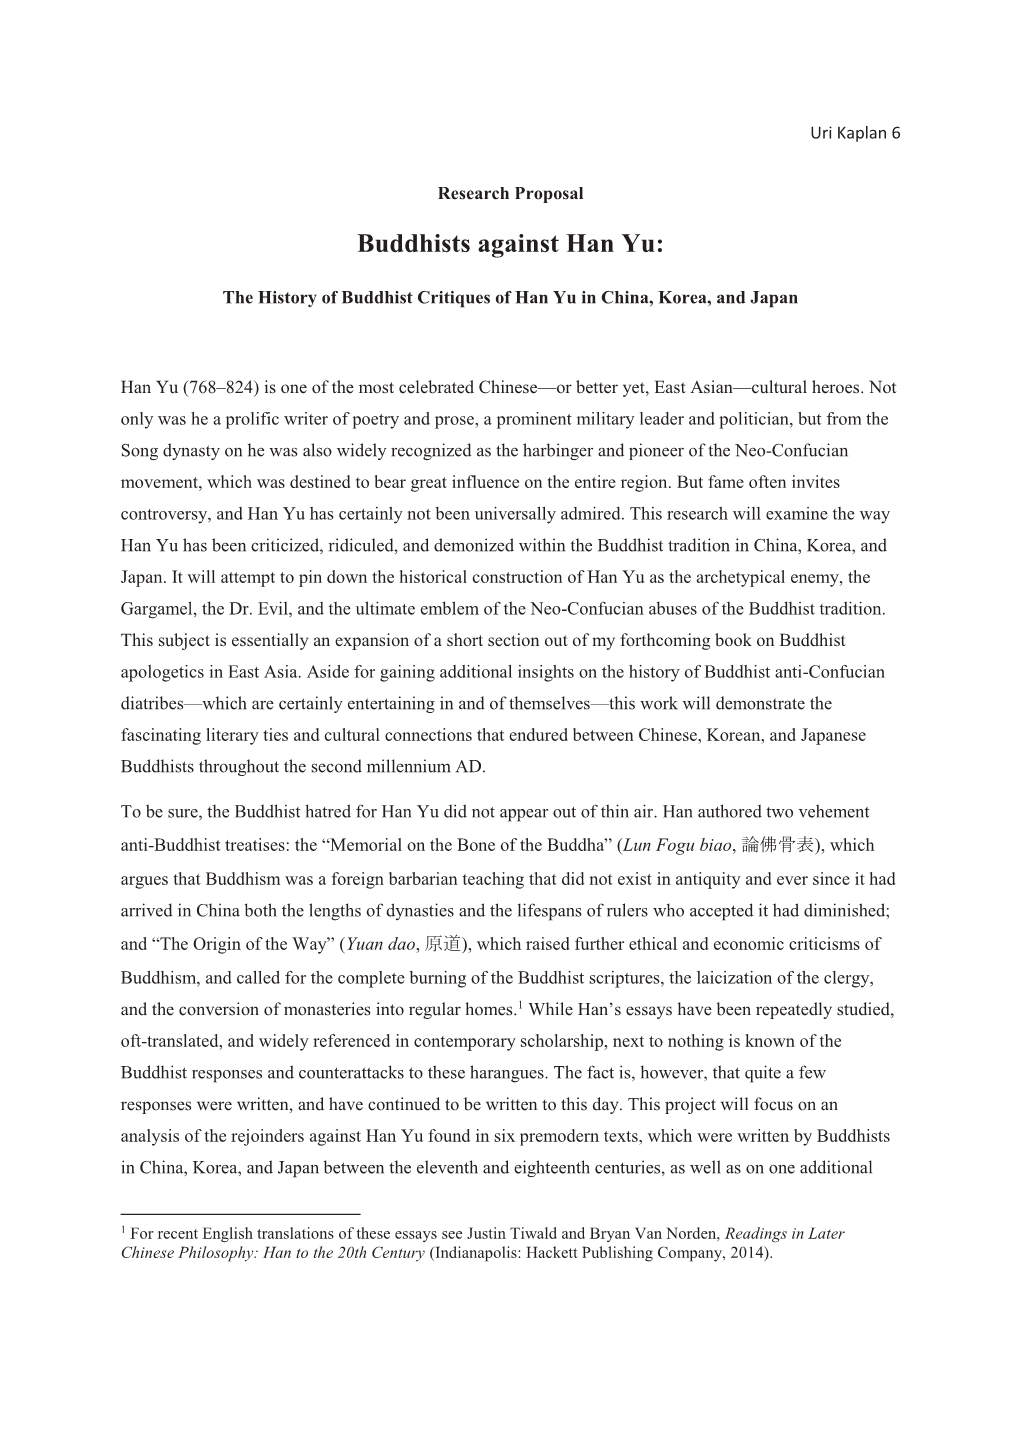 Buddhists Against Han Yu